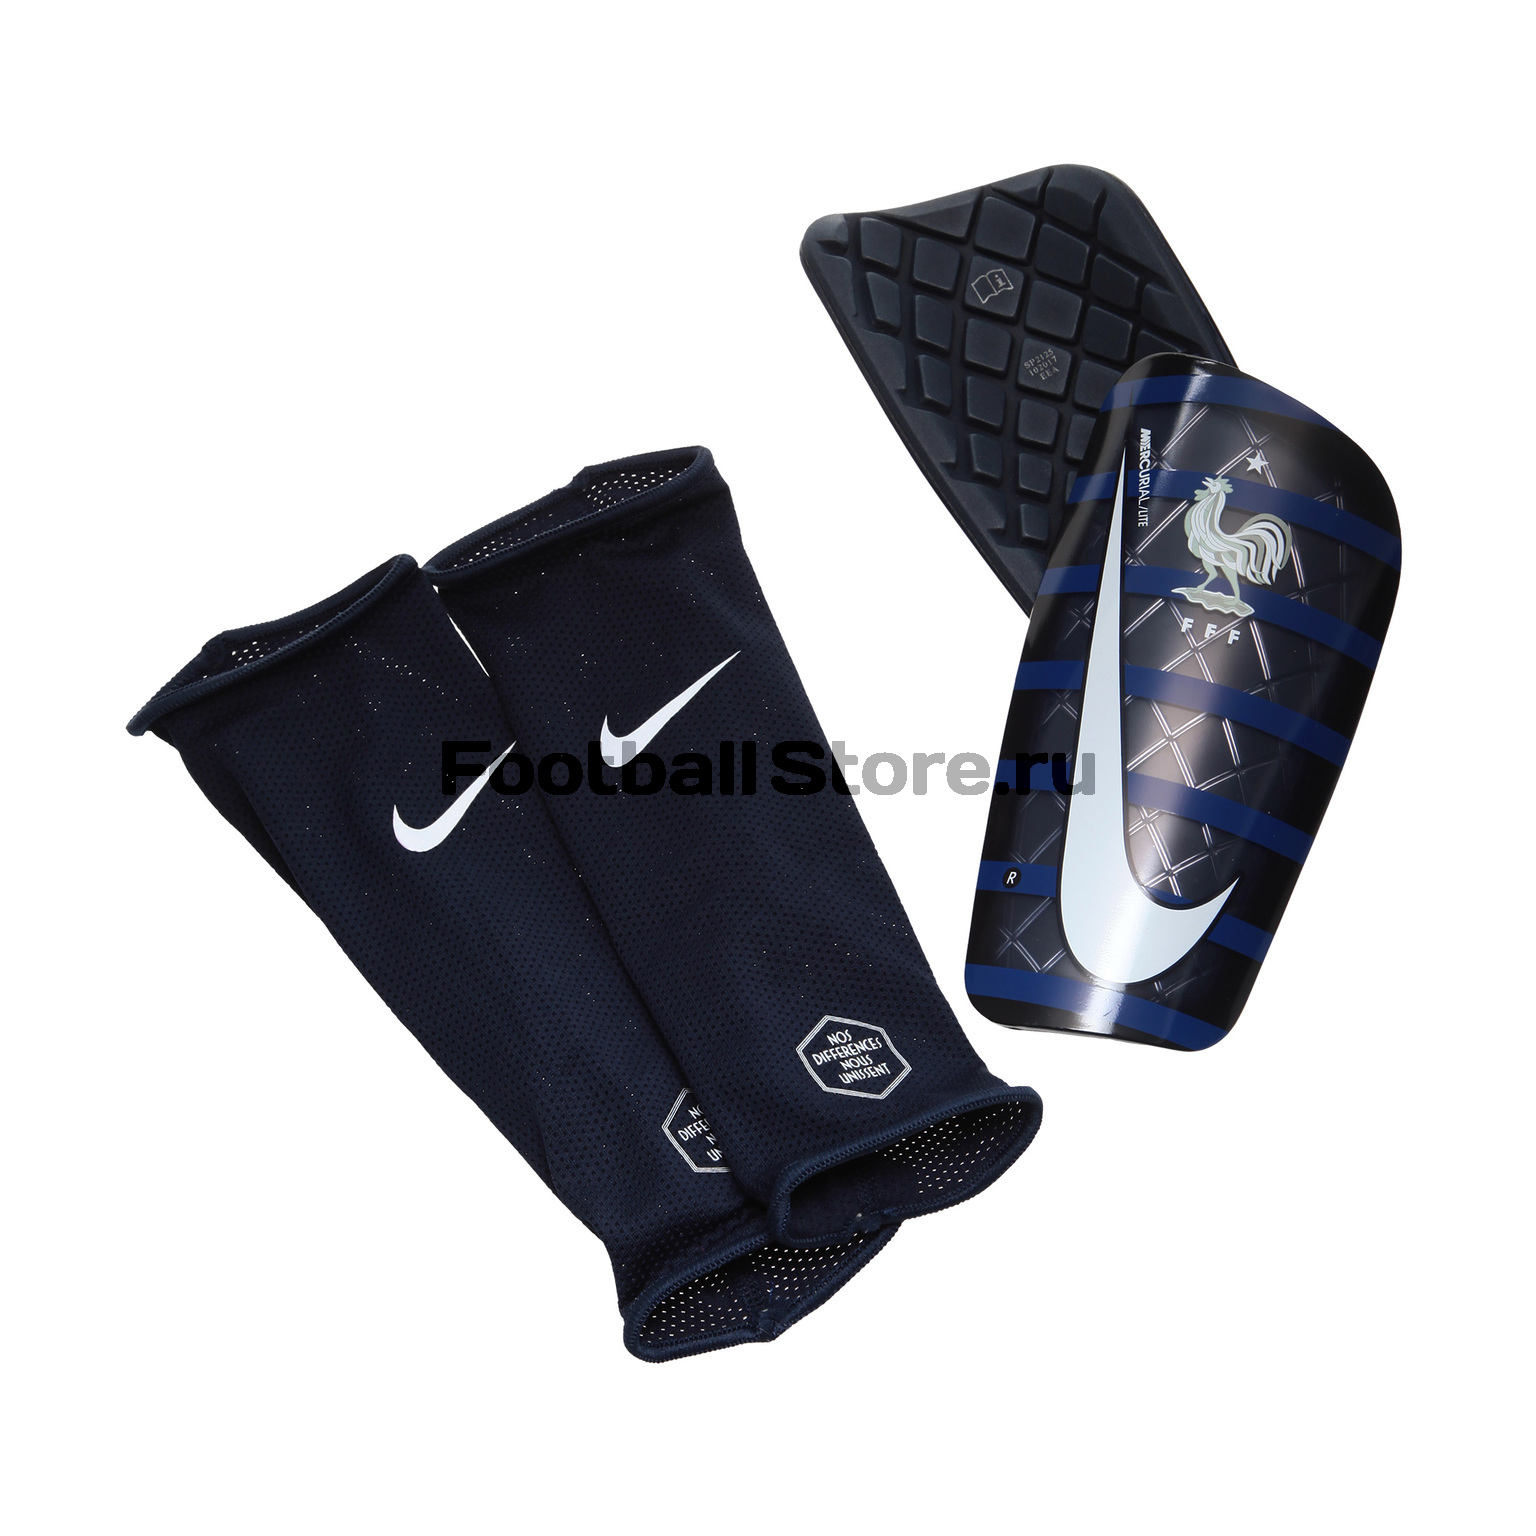 Щитки Nike Mercurial сборной Франции SP2125-451